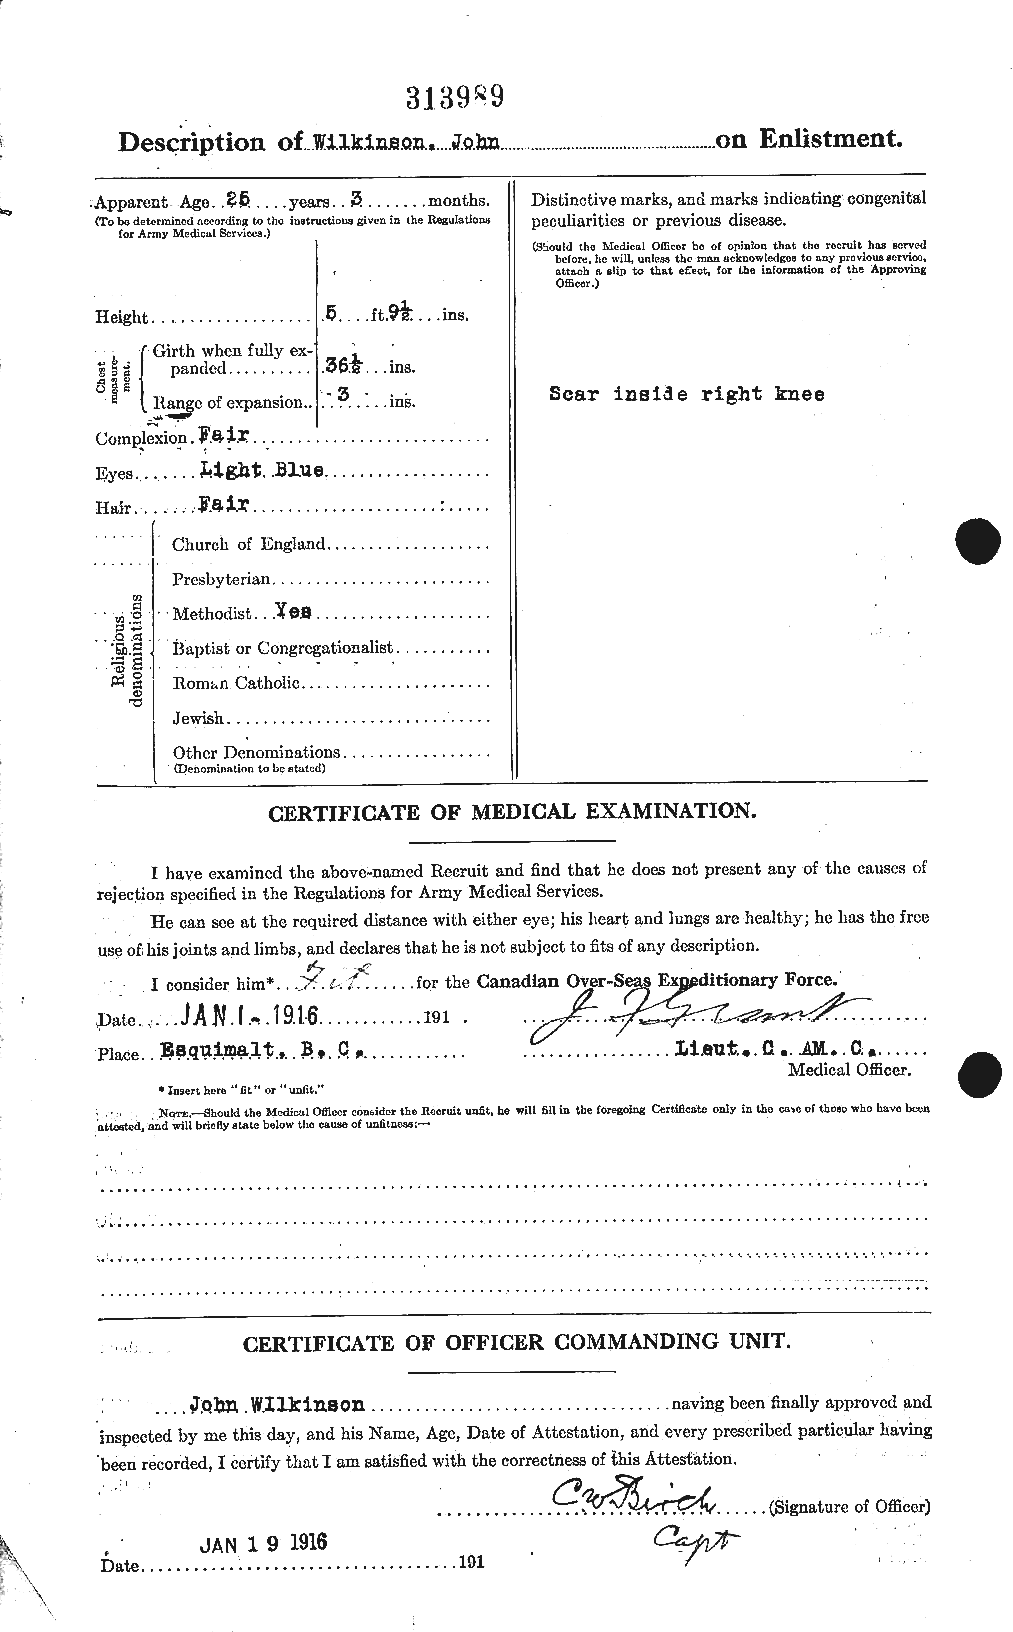 Dossiers du Personnel de la Première Guerre mondiale - CEC 673321b